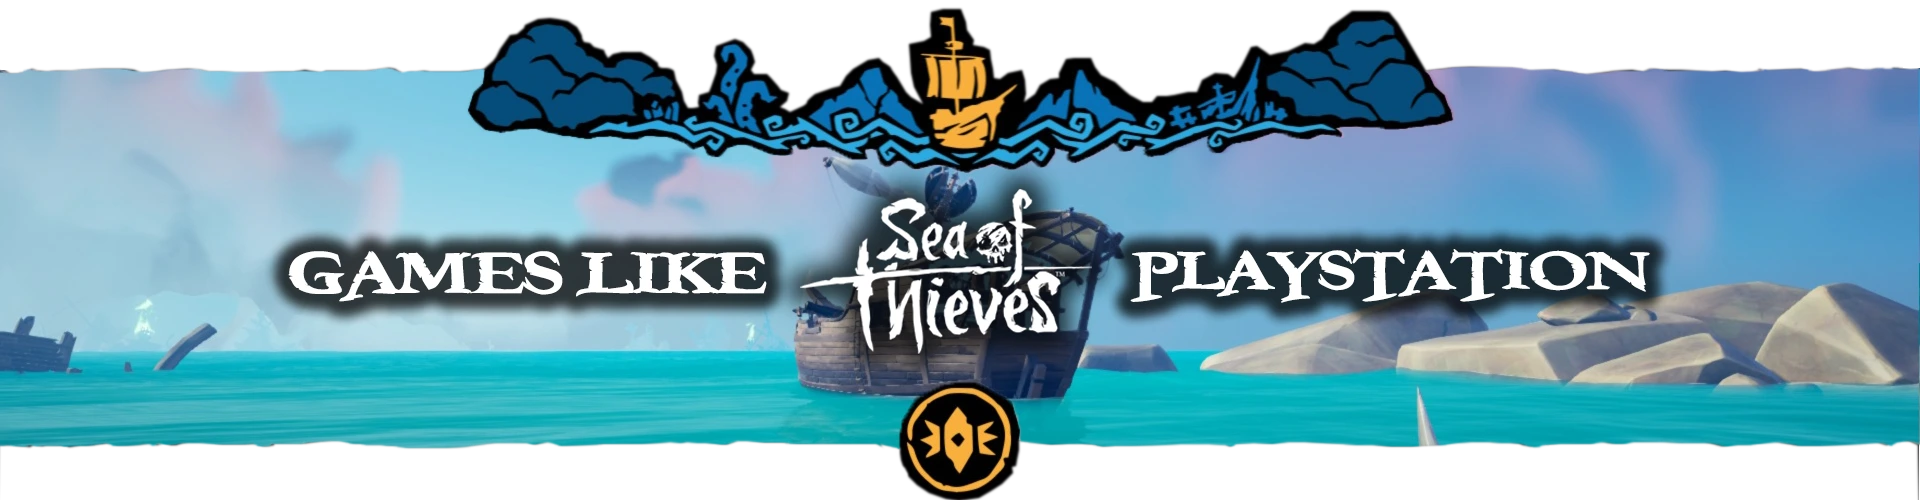 Giochi PS4/PS5 Come Sea Of Thieves